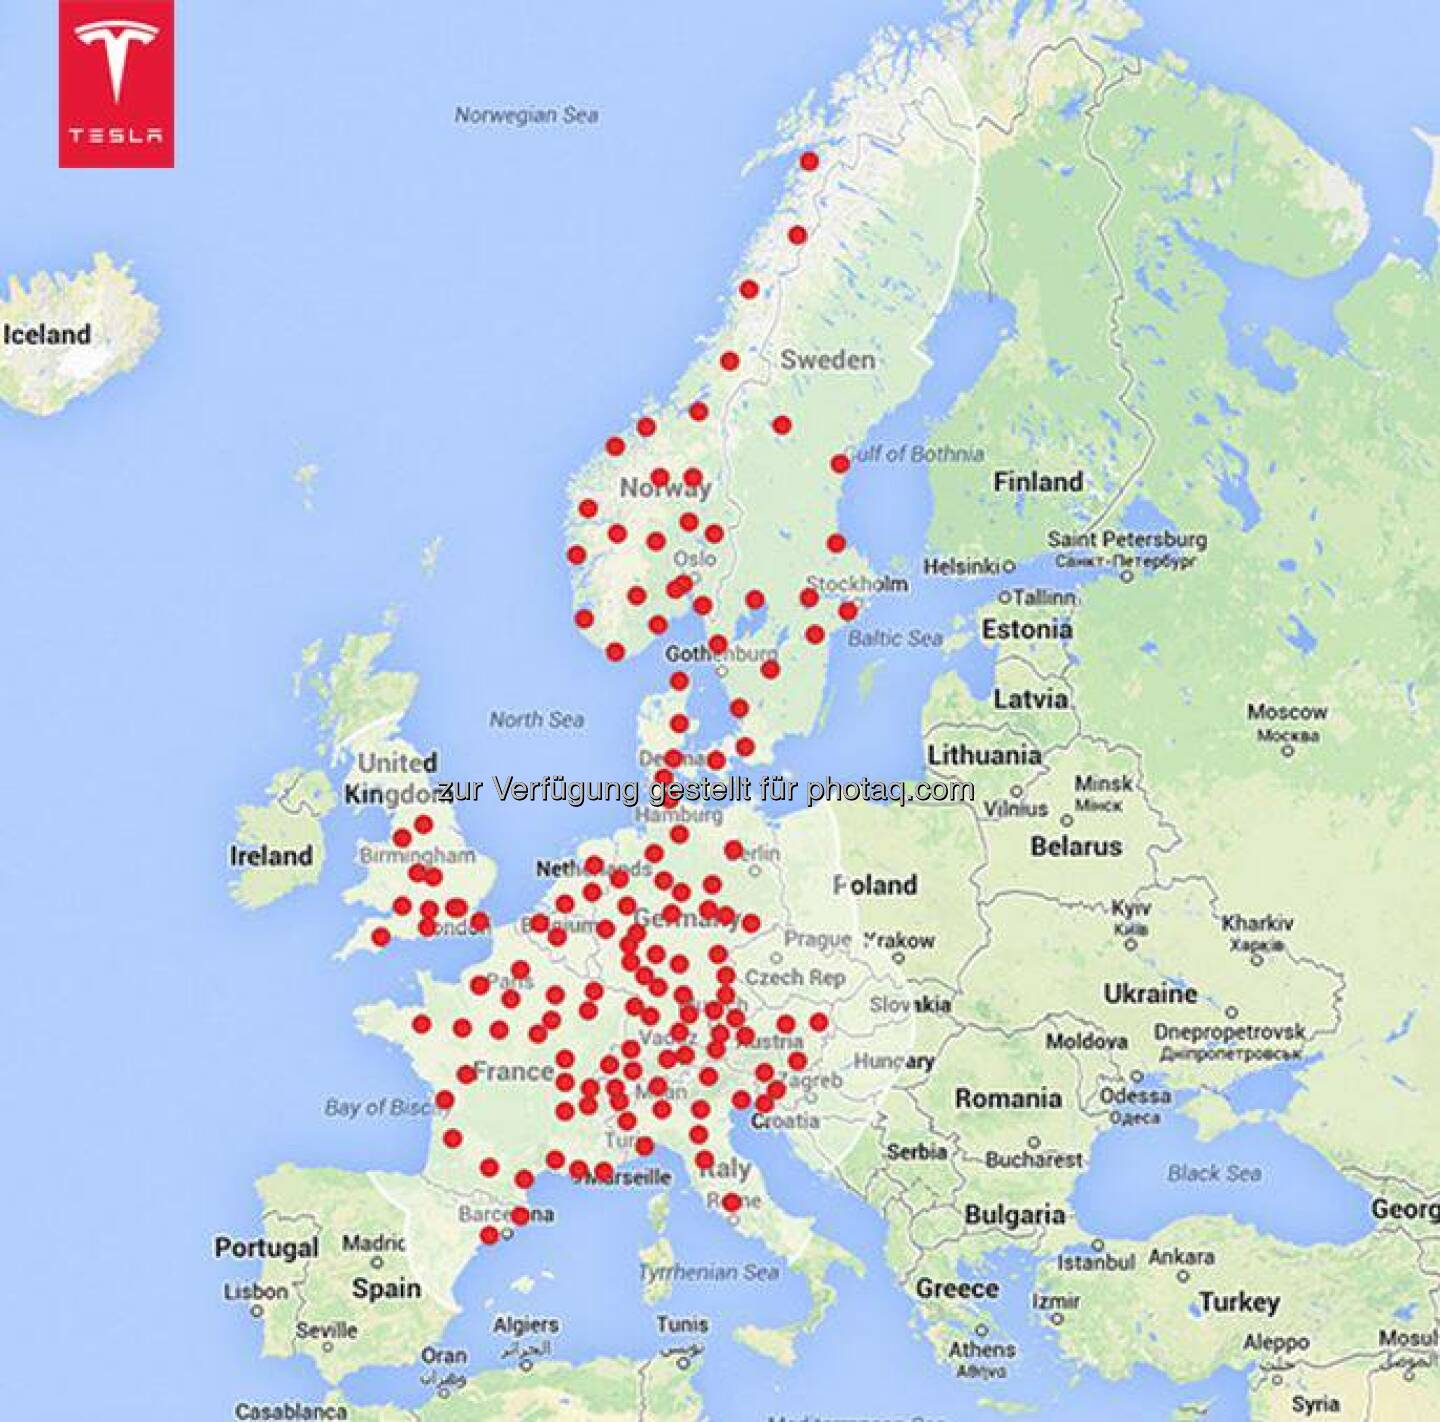 Our planned Supercharger expansion for 2015 in Europe. 

www.teslamotors.com/en_EU/supercharger  Source: http://facebook.com/teslamotors